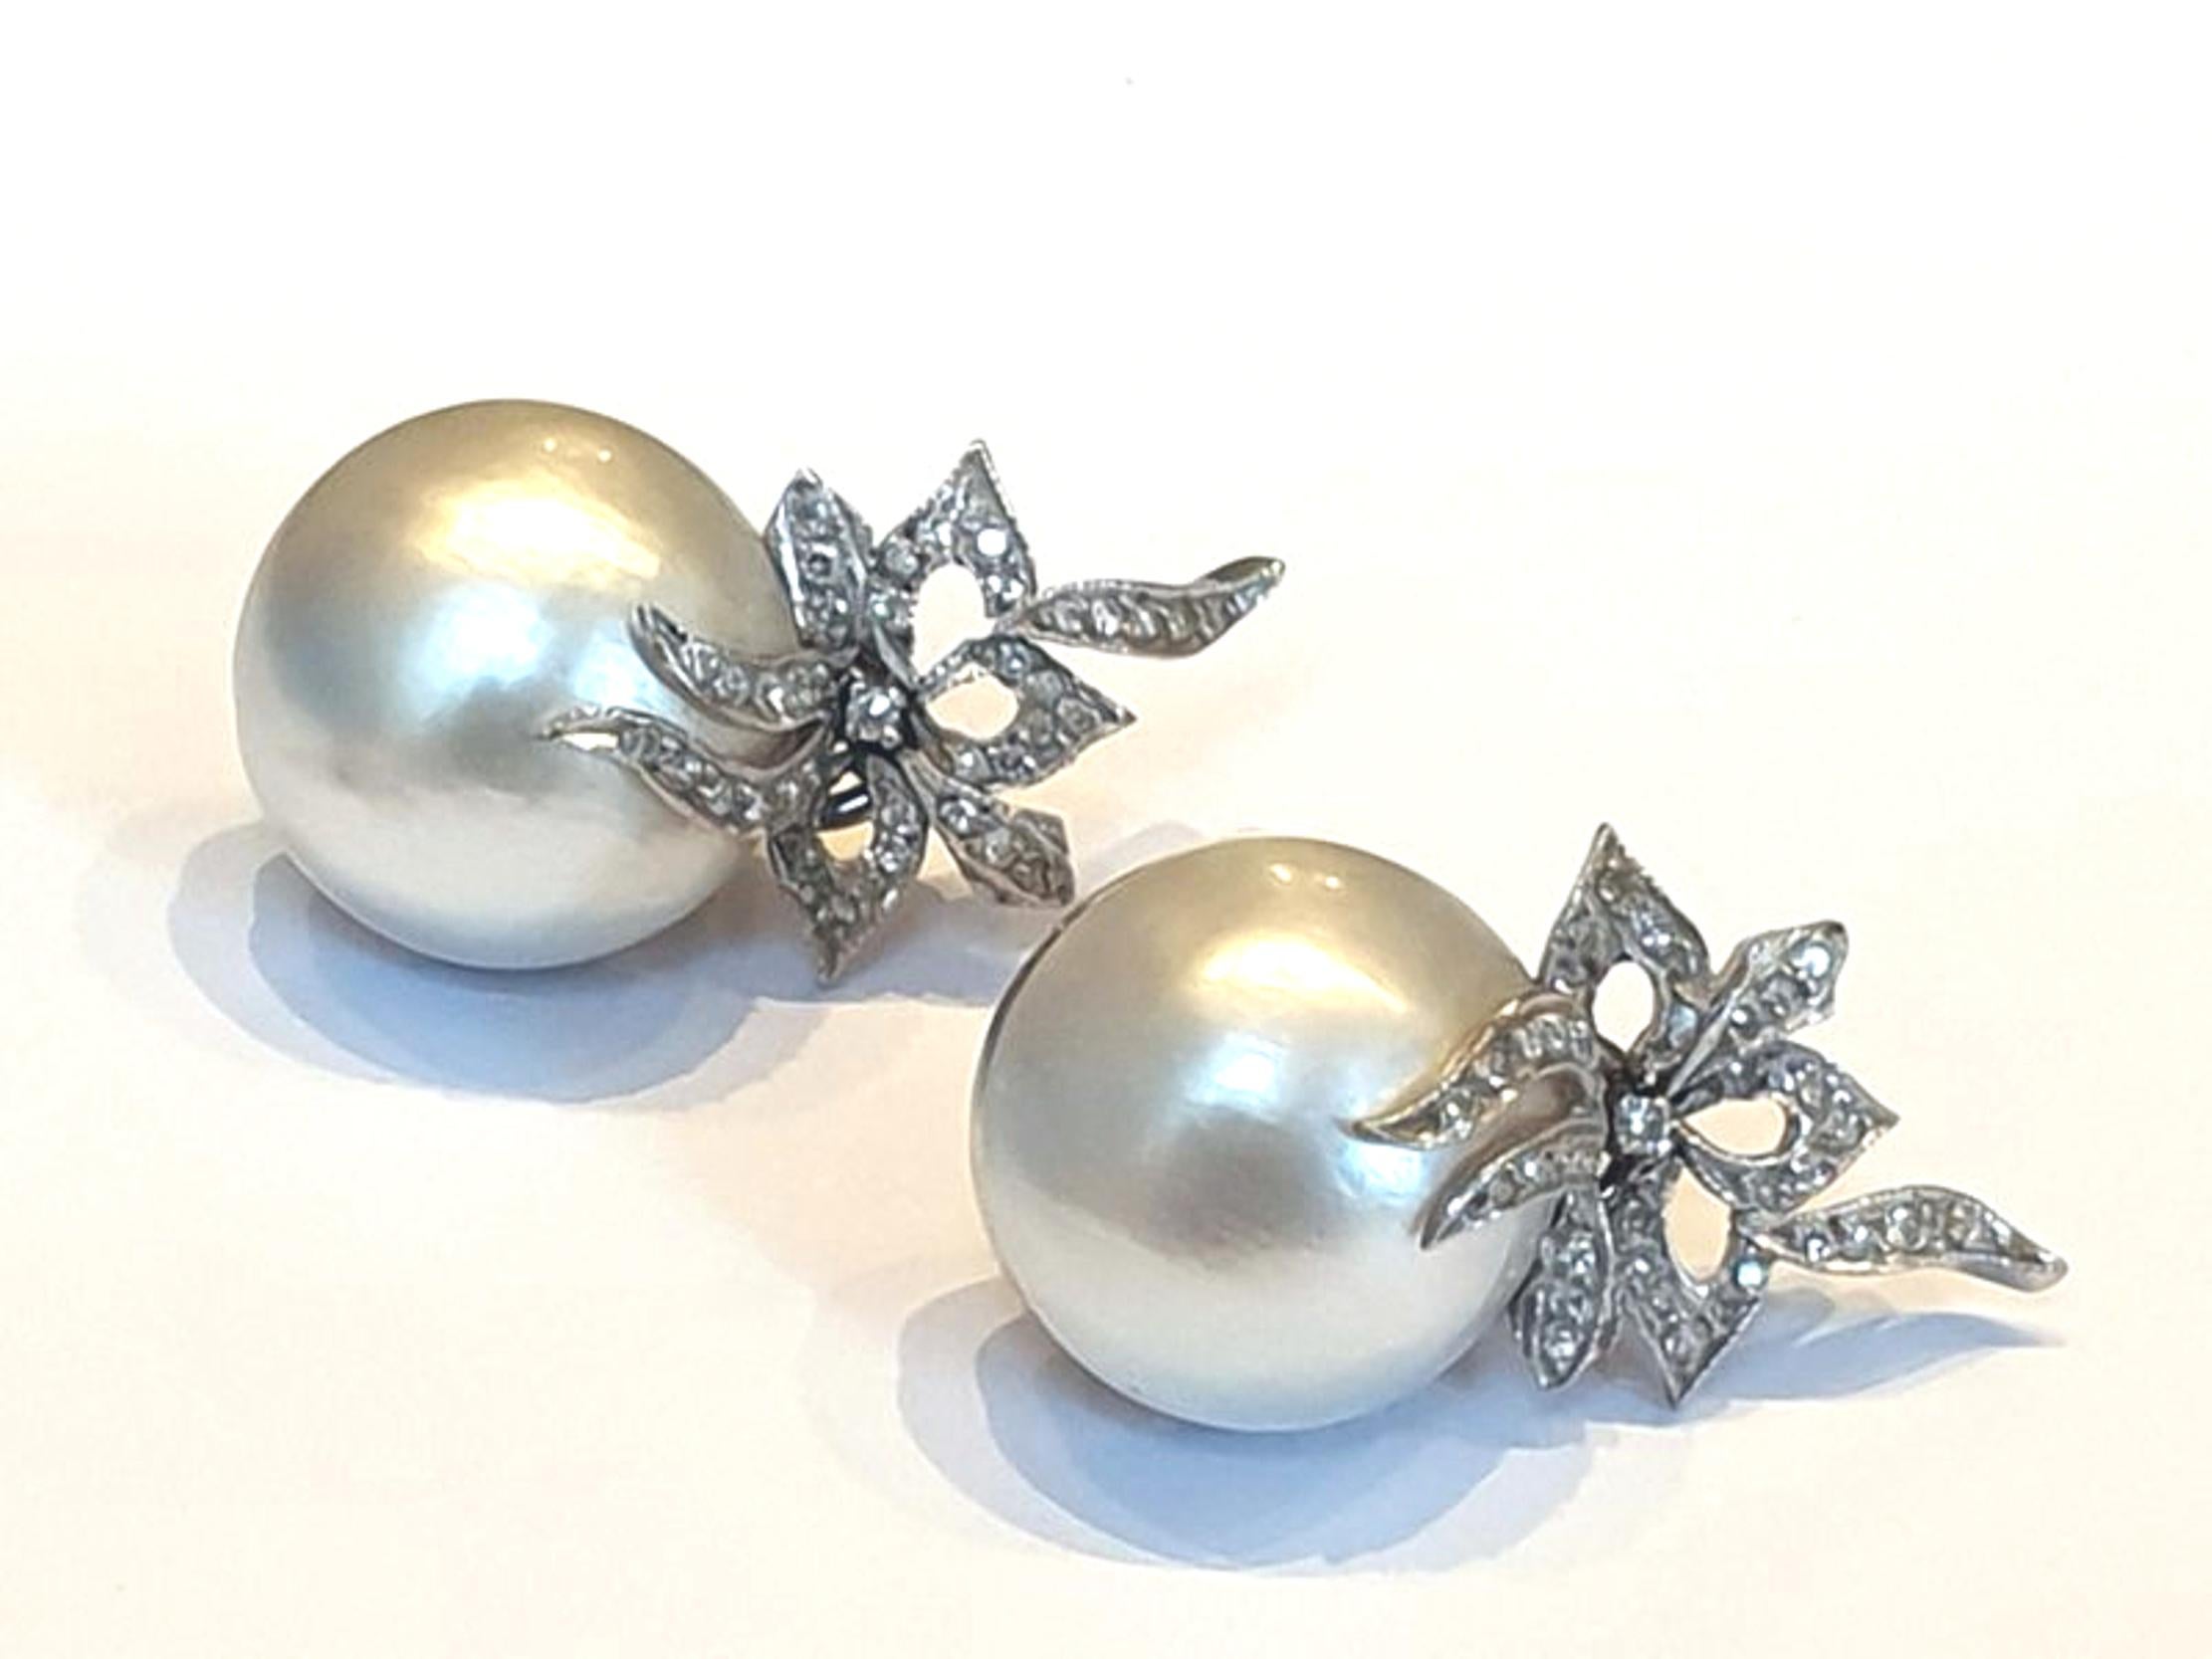 Der Inbegriff zeitloser Eleganz und Raffinesse - die Platin-Mape-Perlenohrringe, die mit 78 exquisiten Diamanten von insgesamt 0,79 Karat besetzt sind. Diese mit viel Liebe zum Detail gefertigten Ohrringe sind nicht nur Accessoires, sondern